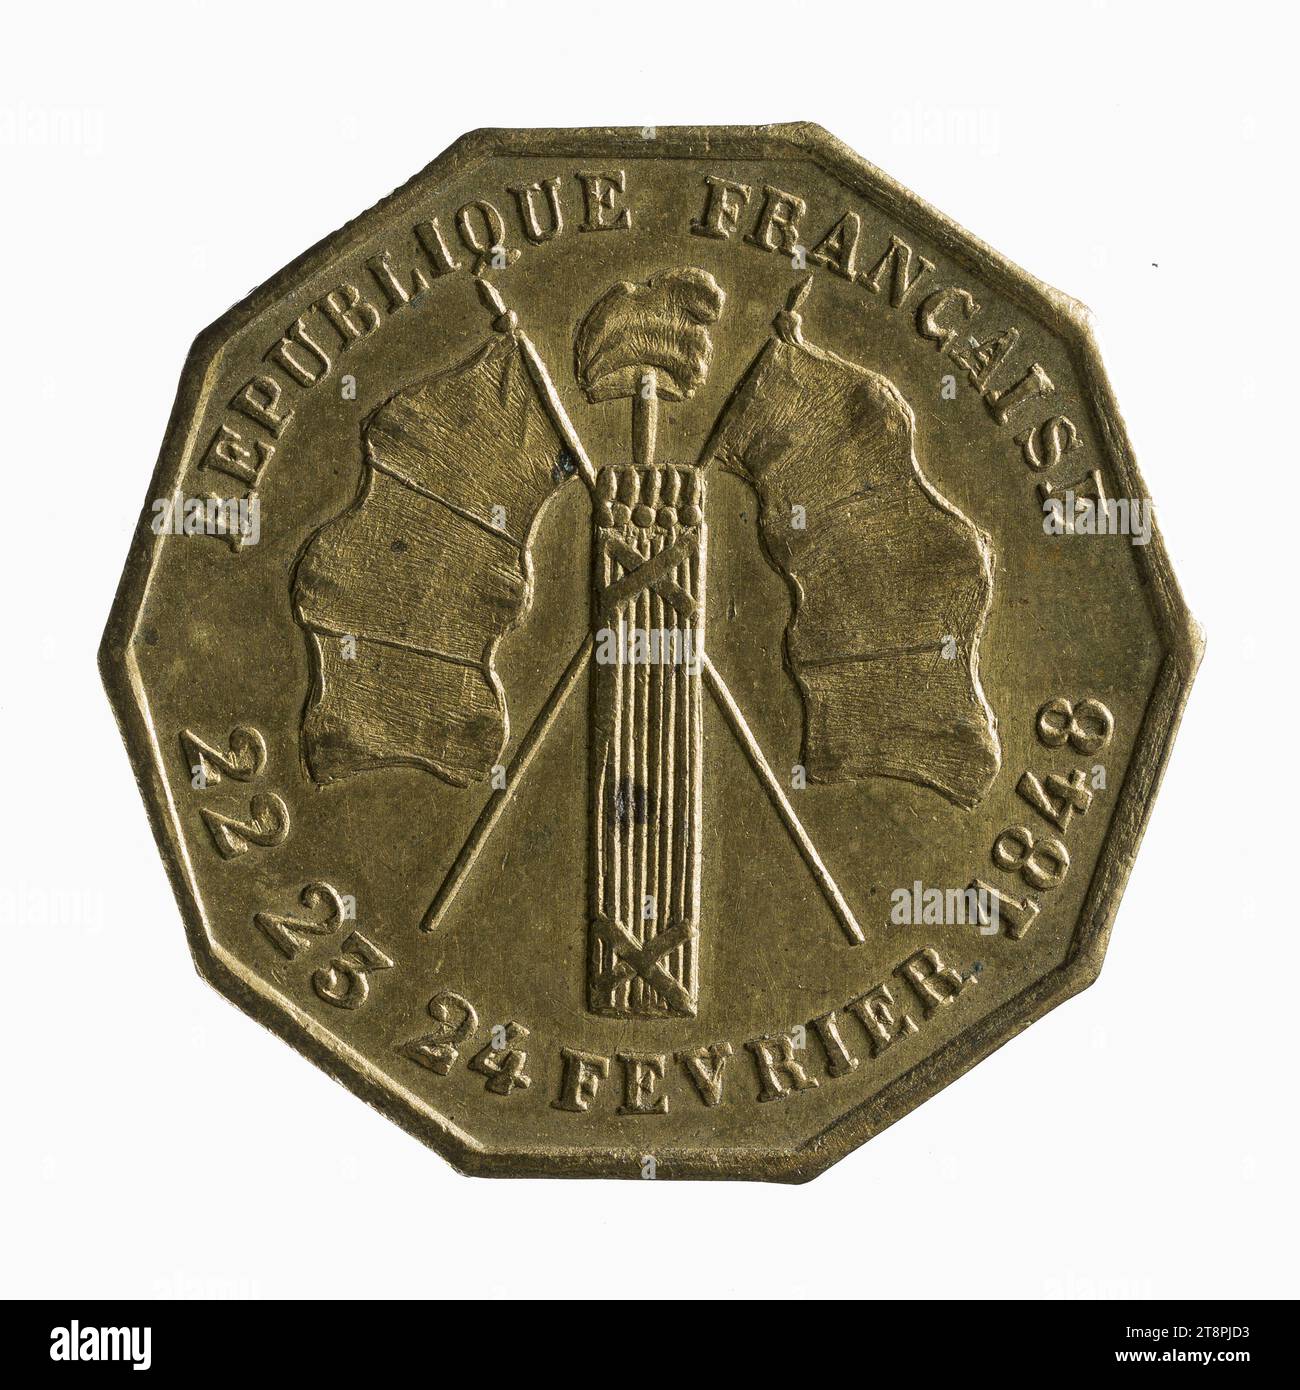 Honneur aux citoyens, révolution de 1848, 22 au 24 février 1848, Array, Numismatique, Token (numismatique), laiton, Dimensions - travail : diamètre : 2,3 cm, poids (dimension type) : 3,26 g. Banque D'Images